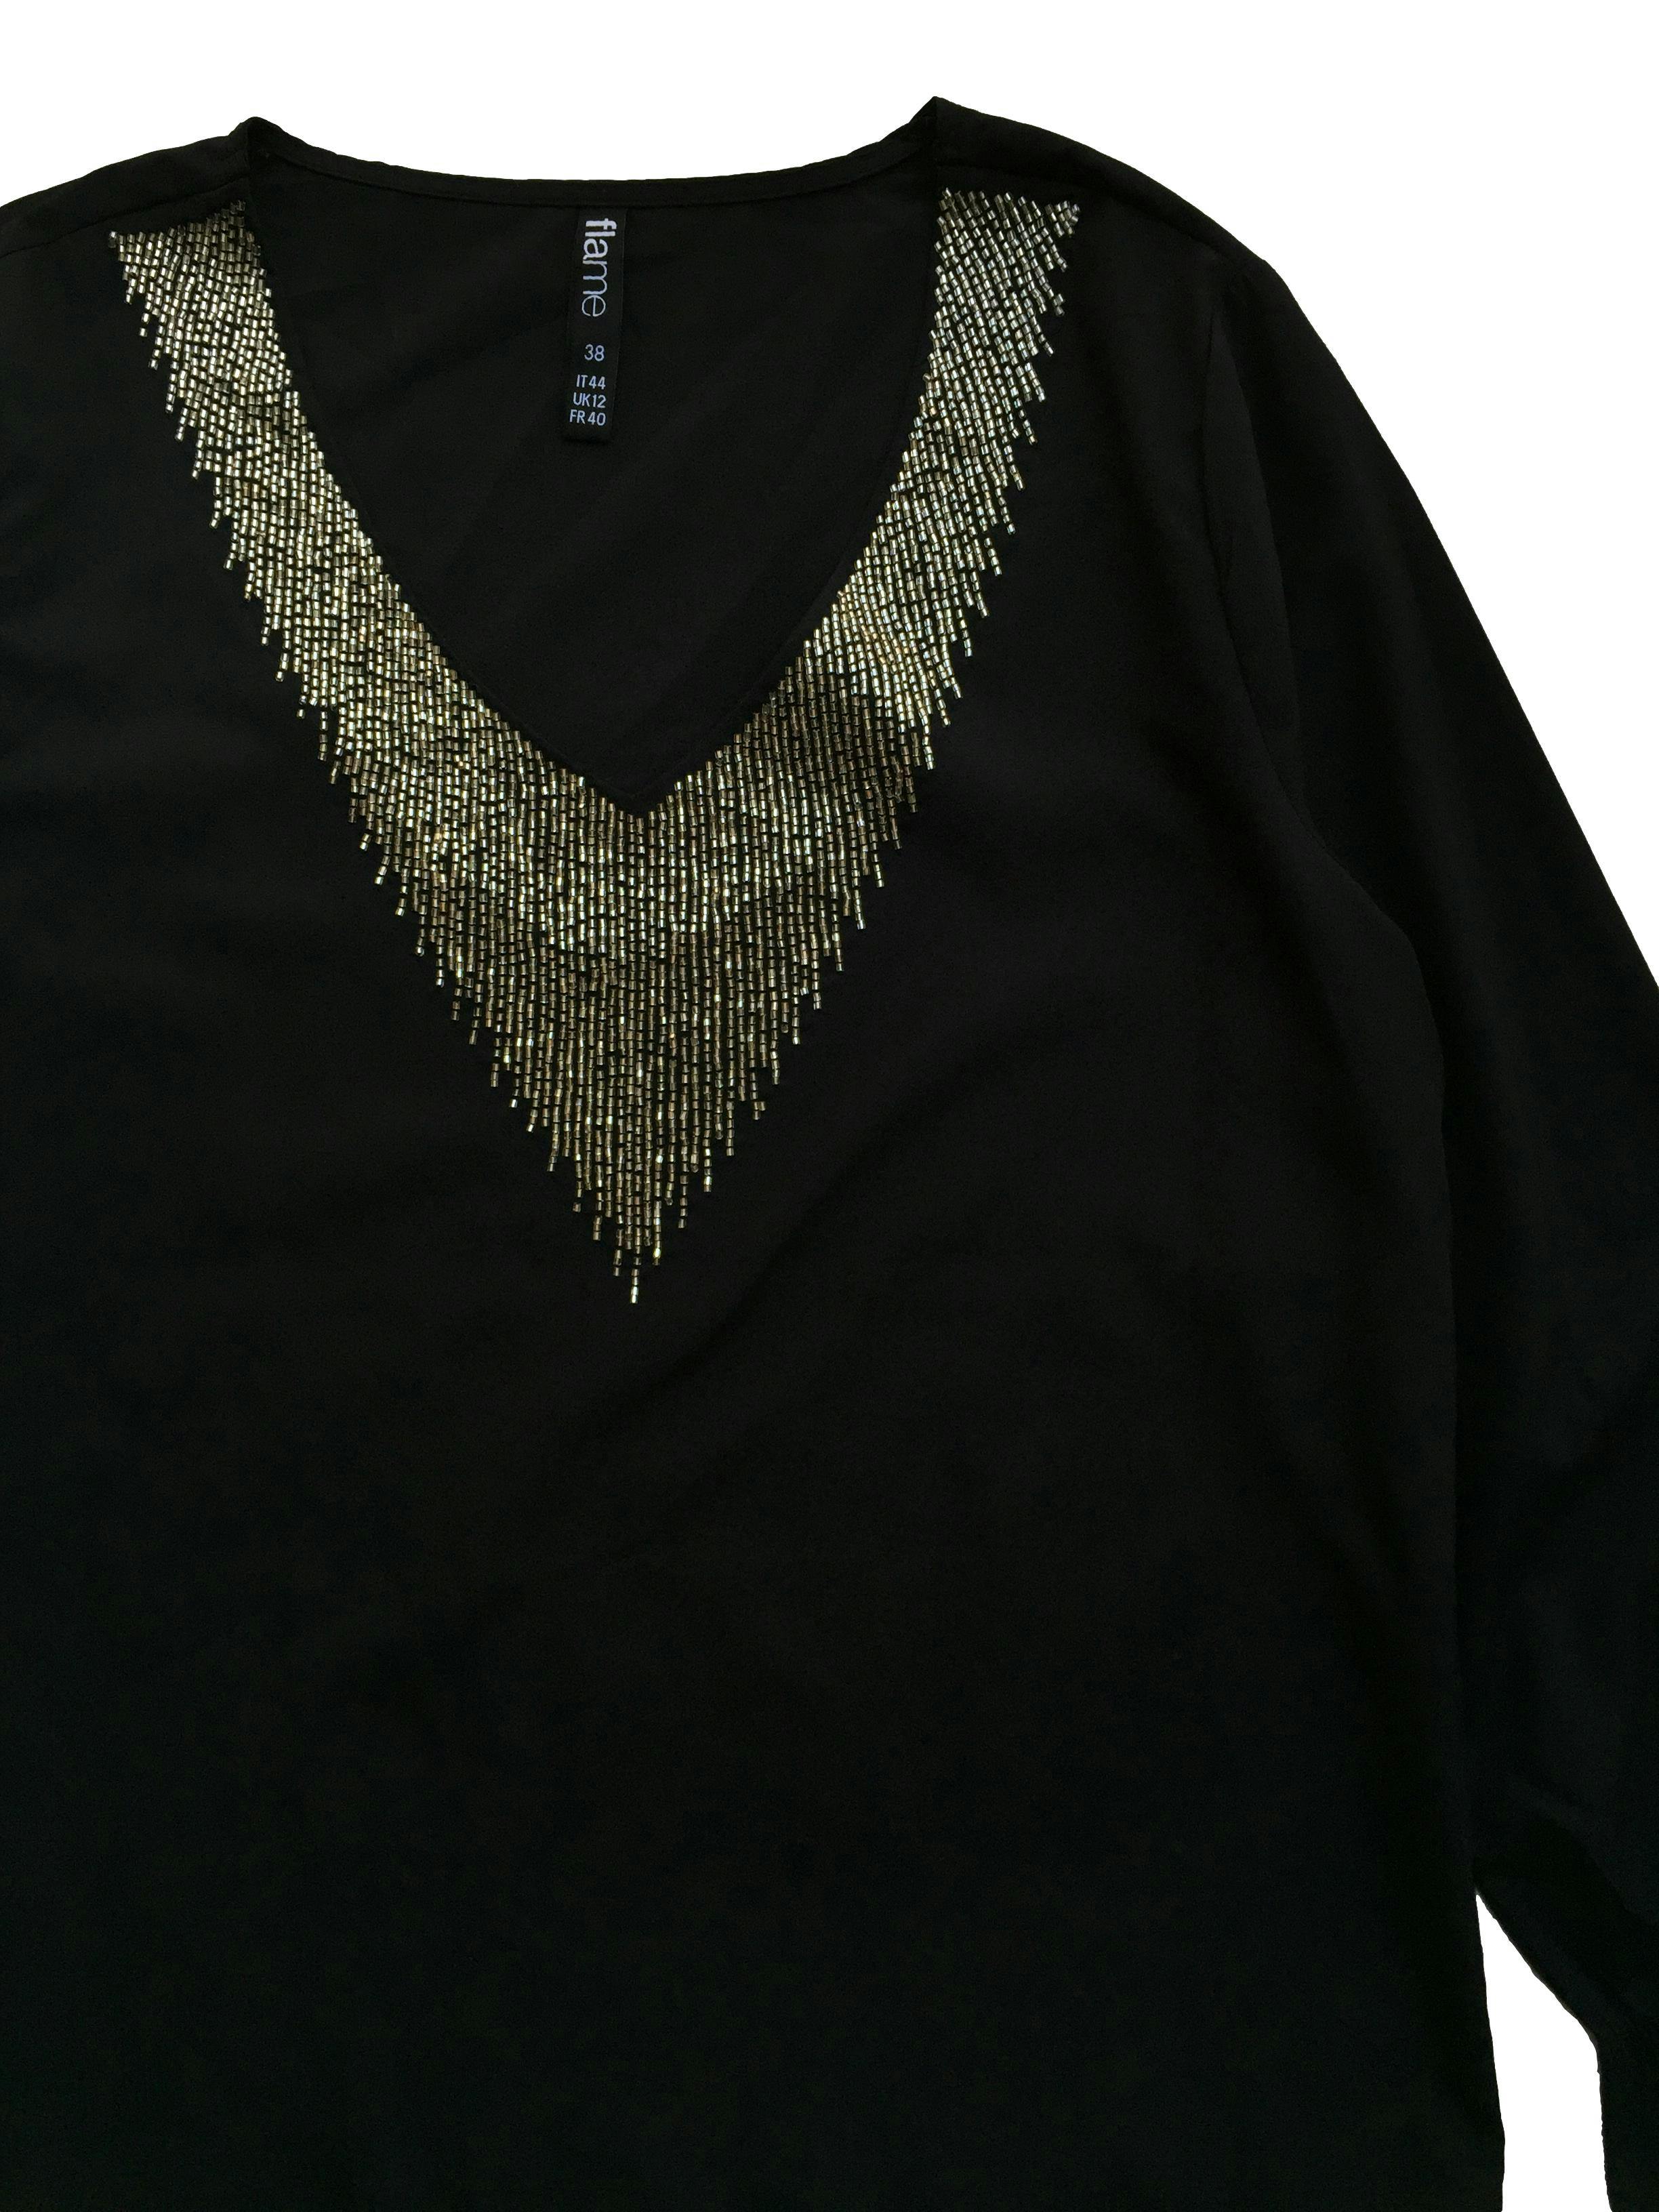 Blusa Flame negra con aplicaciones de mostacillas en el cuello. Busto: 98cm, Largo: 58cm